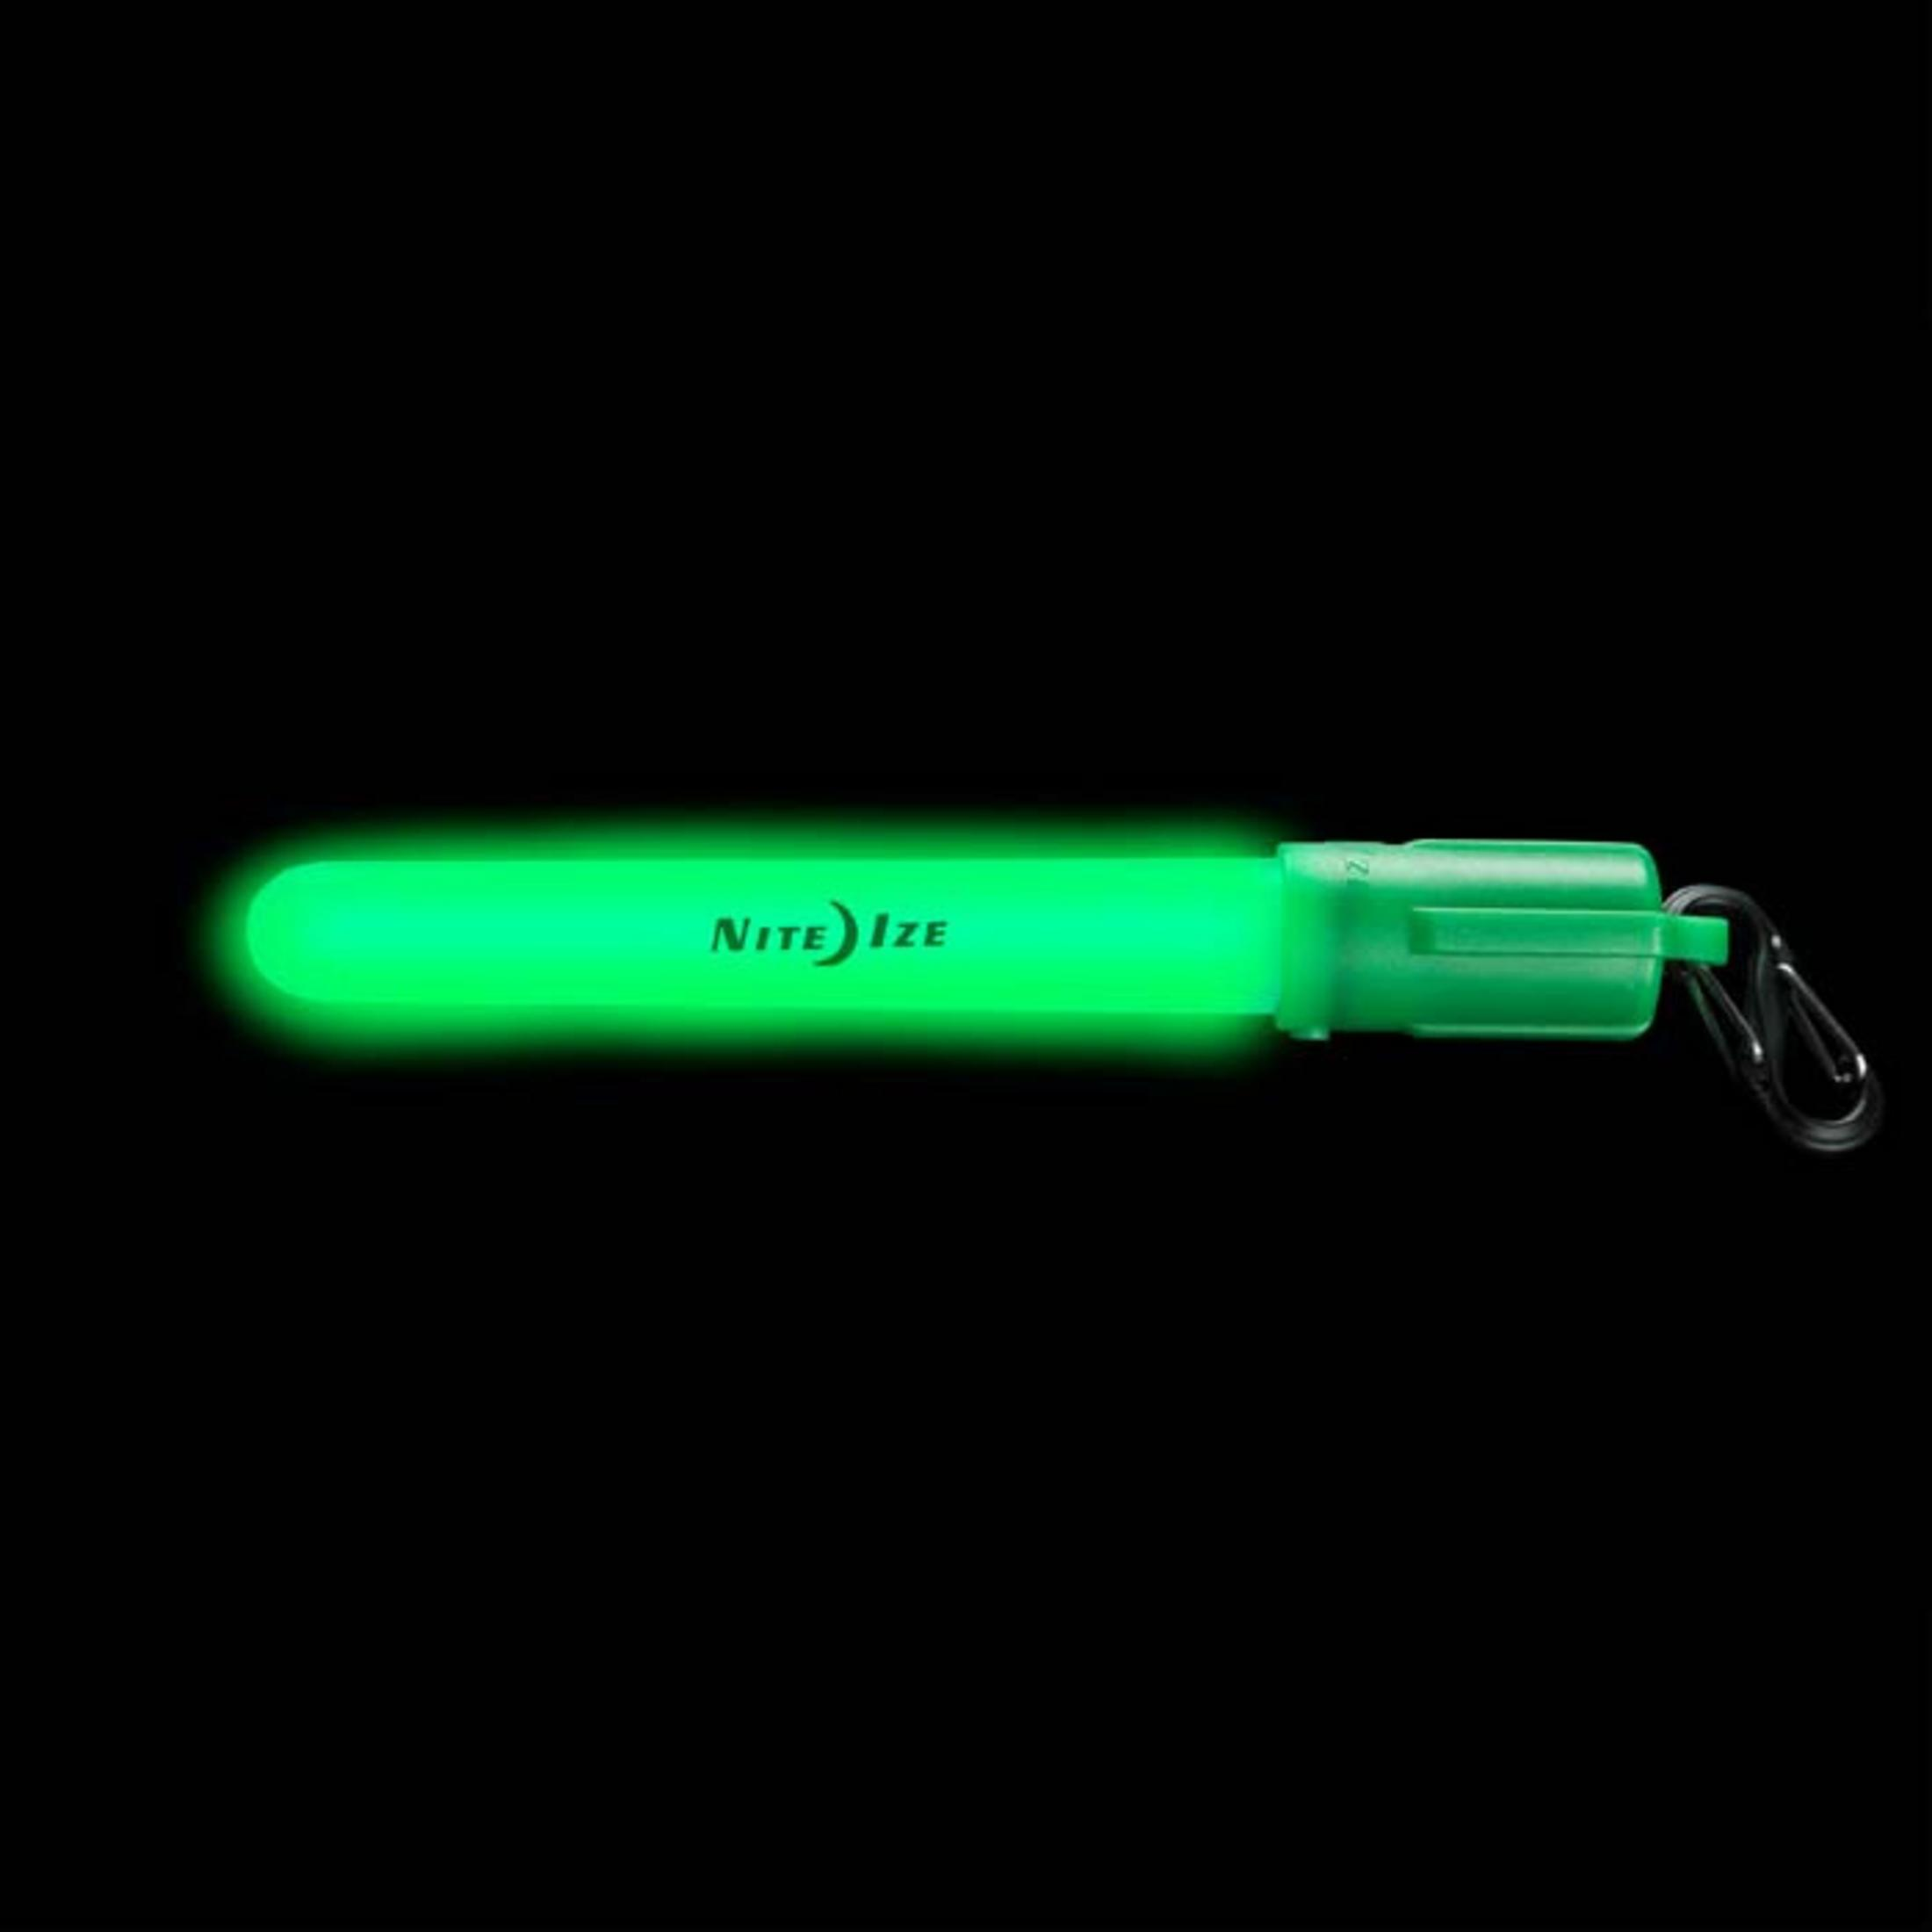 IZE GRÜN NI-MGS-28-R6 Mini LEUCHTSTAB Glowstick LED LED NITE